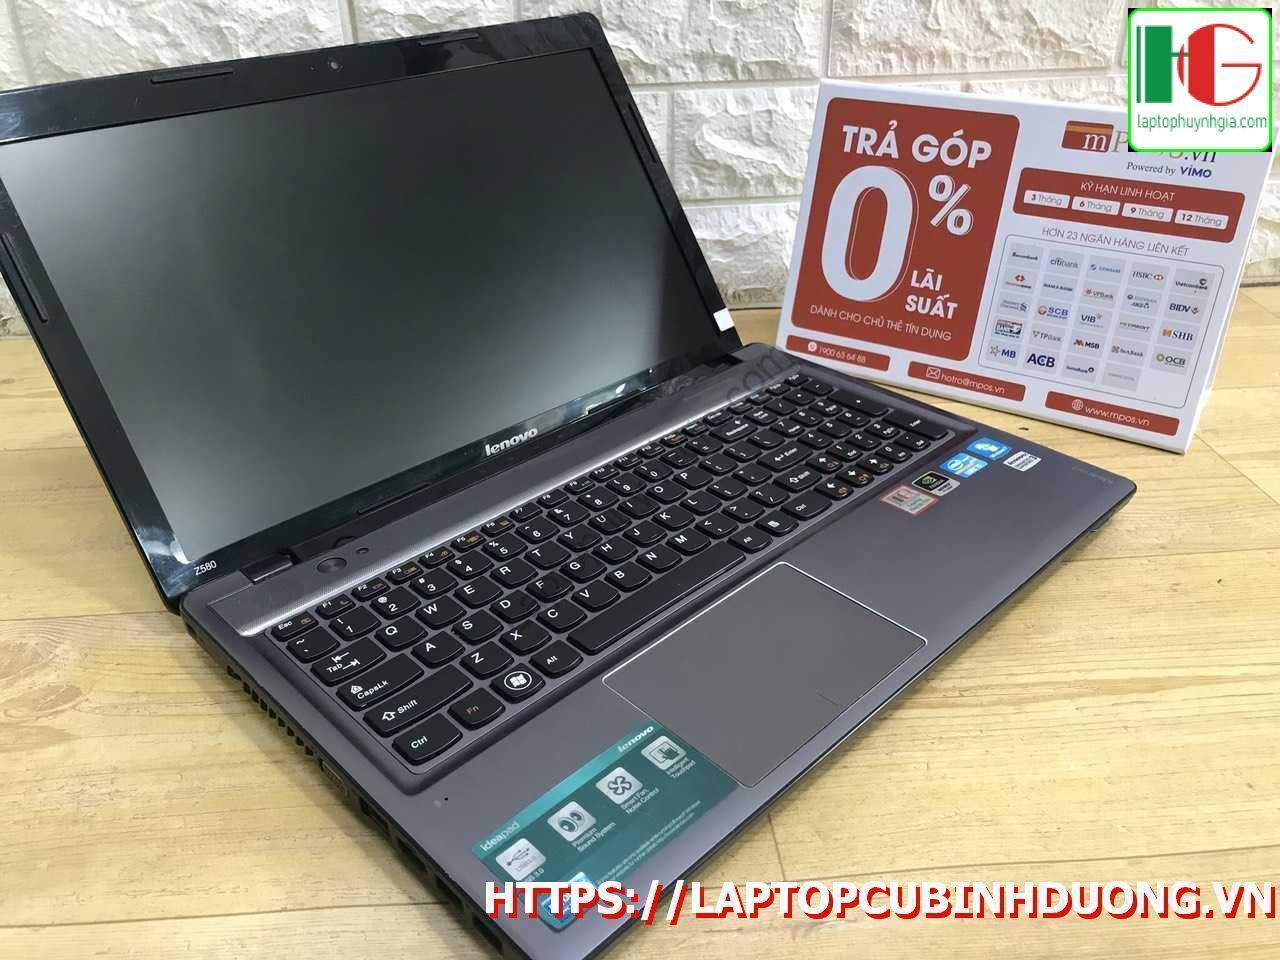 Laptop Lenovo Z580 I5 3210m 4g Ssd 128g Nvidia Gt630 Lcd 15 Laptopcubinhduong.vn 4 [kích Thước Gốc] Result